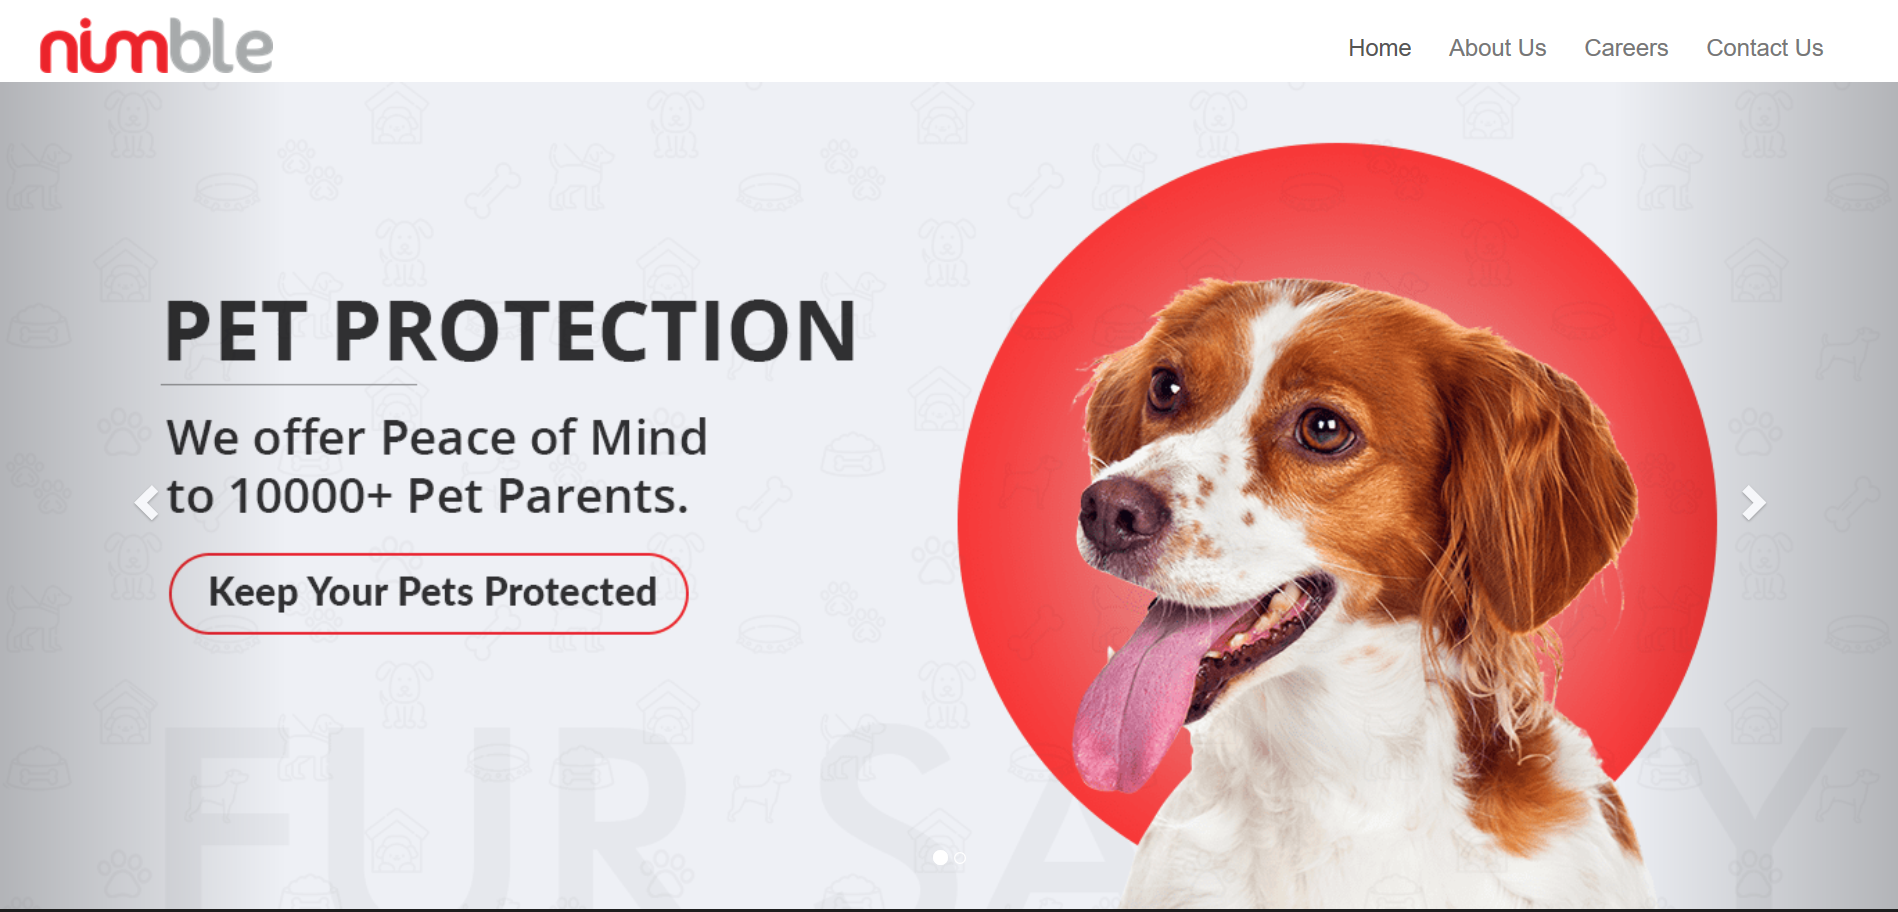 新兴宠物安全物联网公司 Nimble 宣布收购宠物社交平台 Waggle Ventures